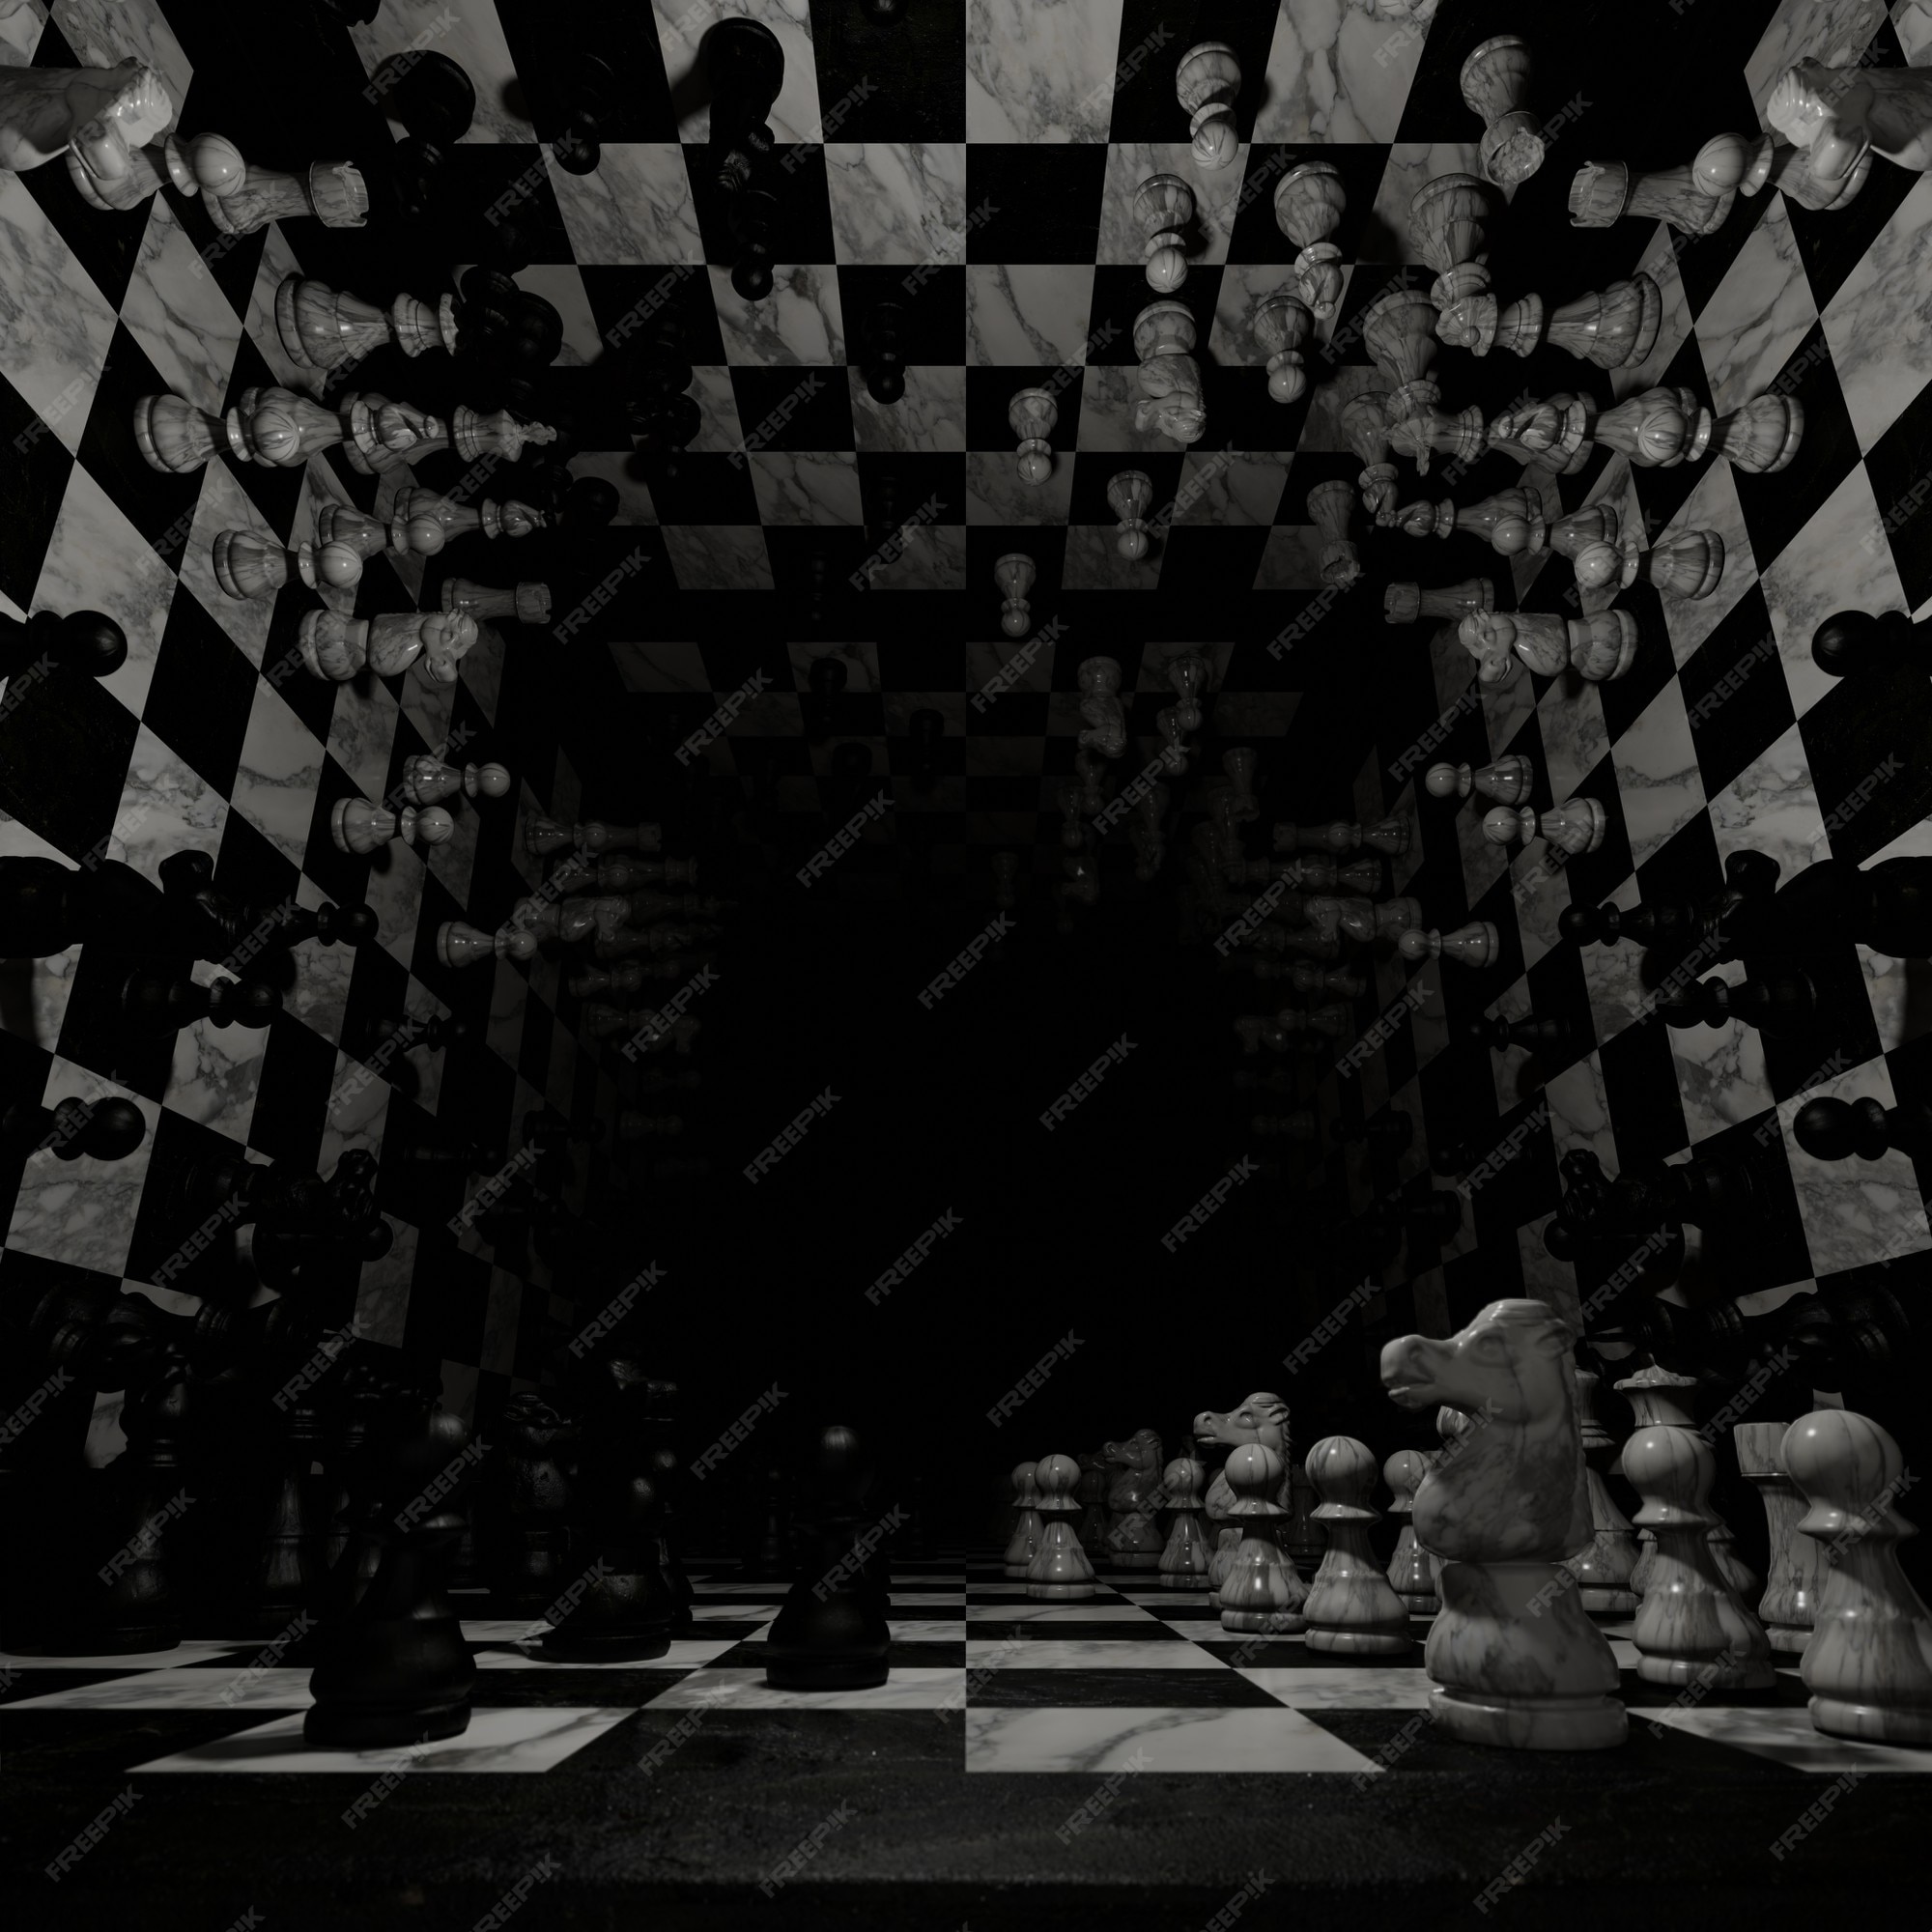 Disfruta en el fondo del tablero de ajedrez como fondo de pantalla en la  desafiante escena del juego | Foto Premium